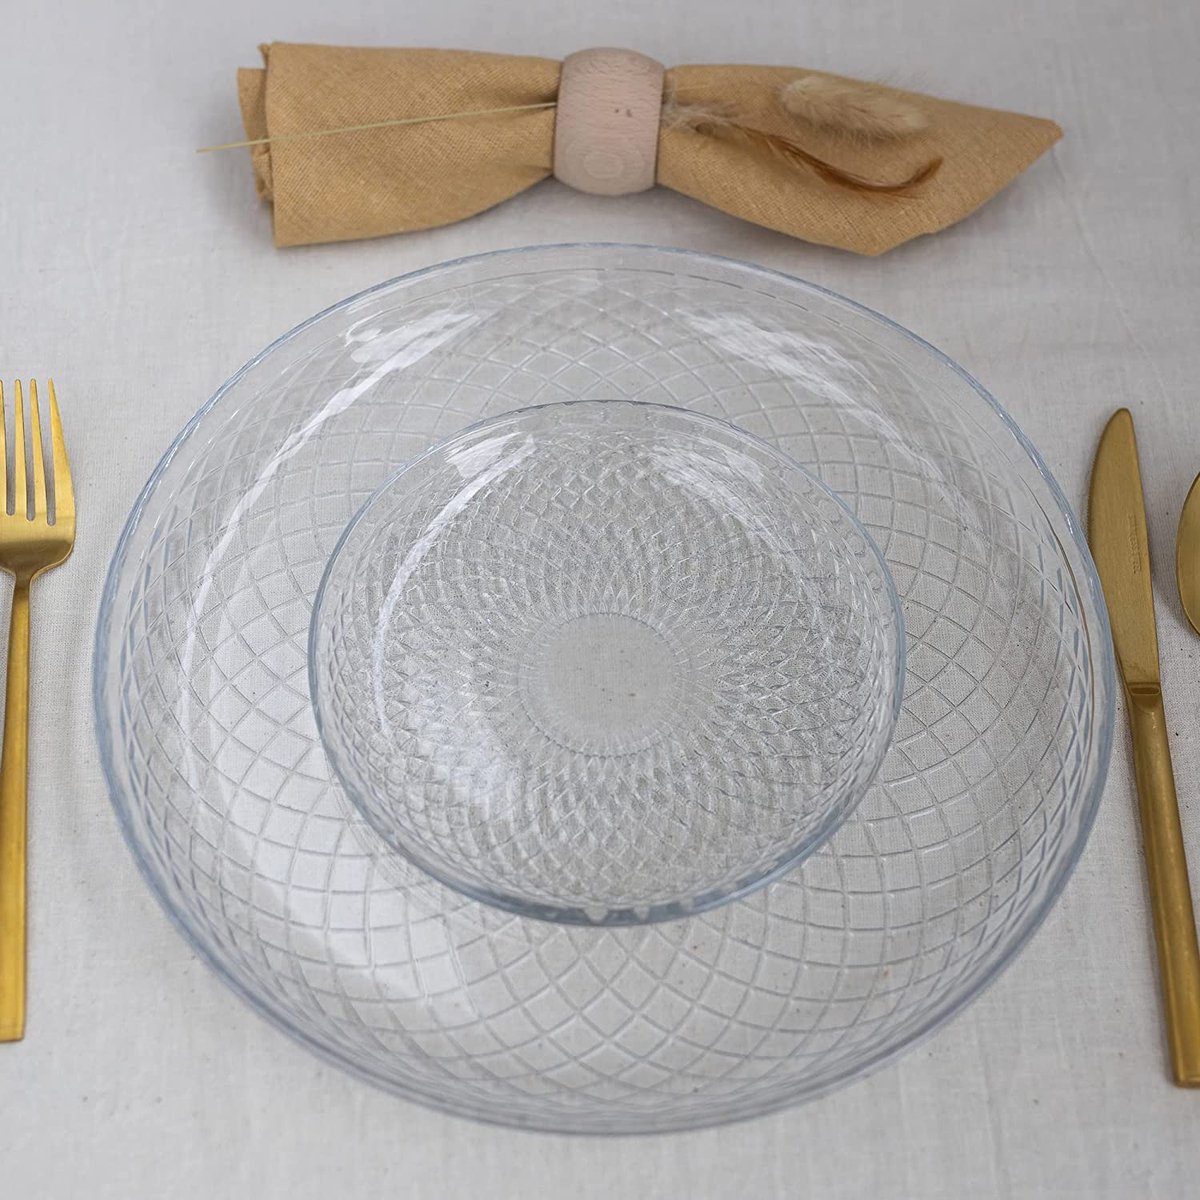 TREND FOR HOME Glazen bord set voor 4 dessertborden servies borden set transparante zijplaten serveerschalen voor salades fruitvoorgerechten | Ø 6 inch | geometrisch patroon | Elina